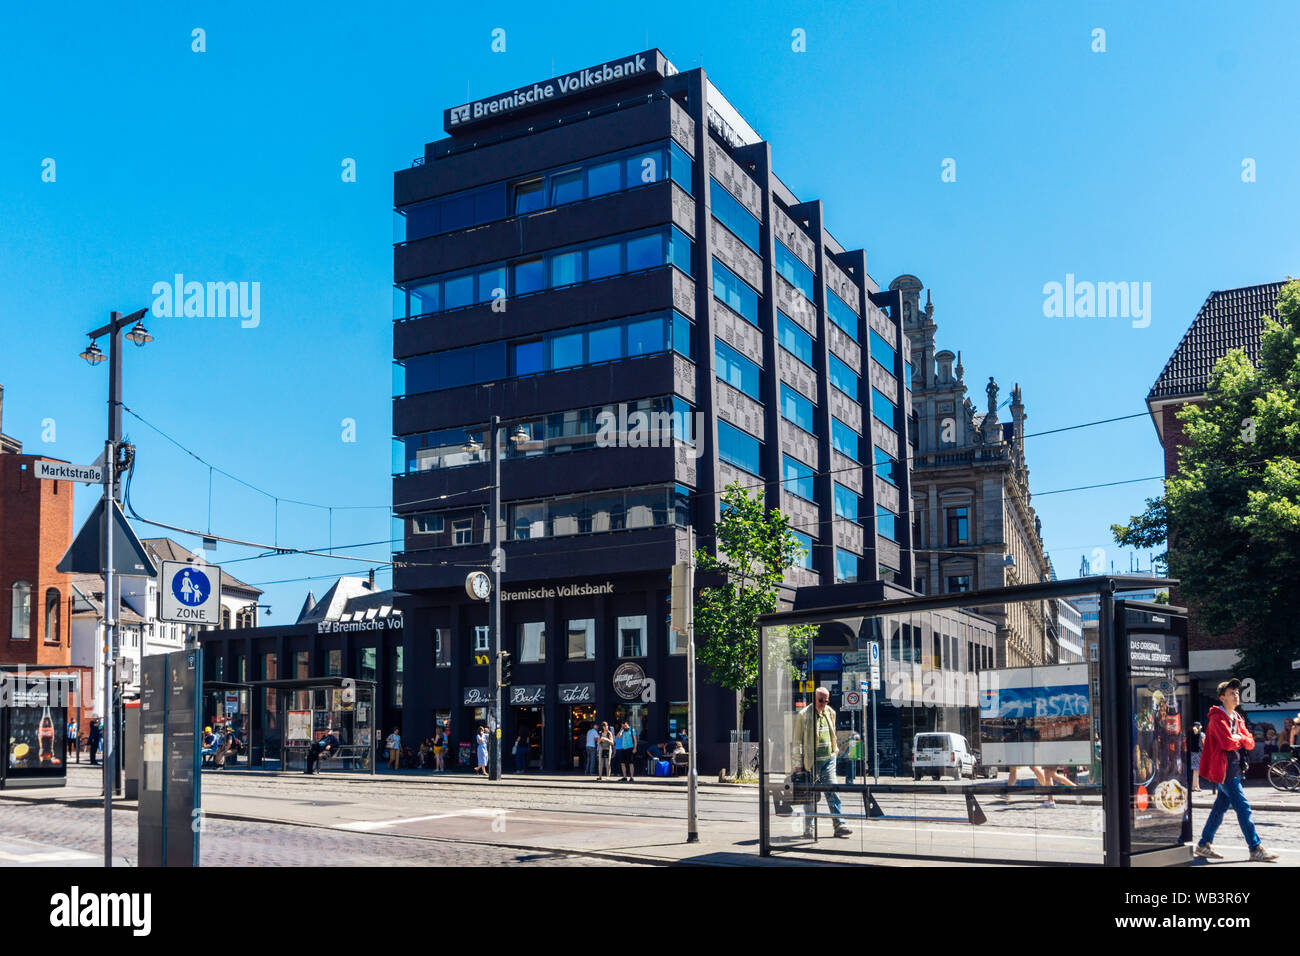 Bremen, Germania - 29 Giugno 2019 - Vista della bank building bremische volksbank a domsheide a Bremen, Germania con il traffico Foto Stock